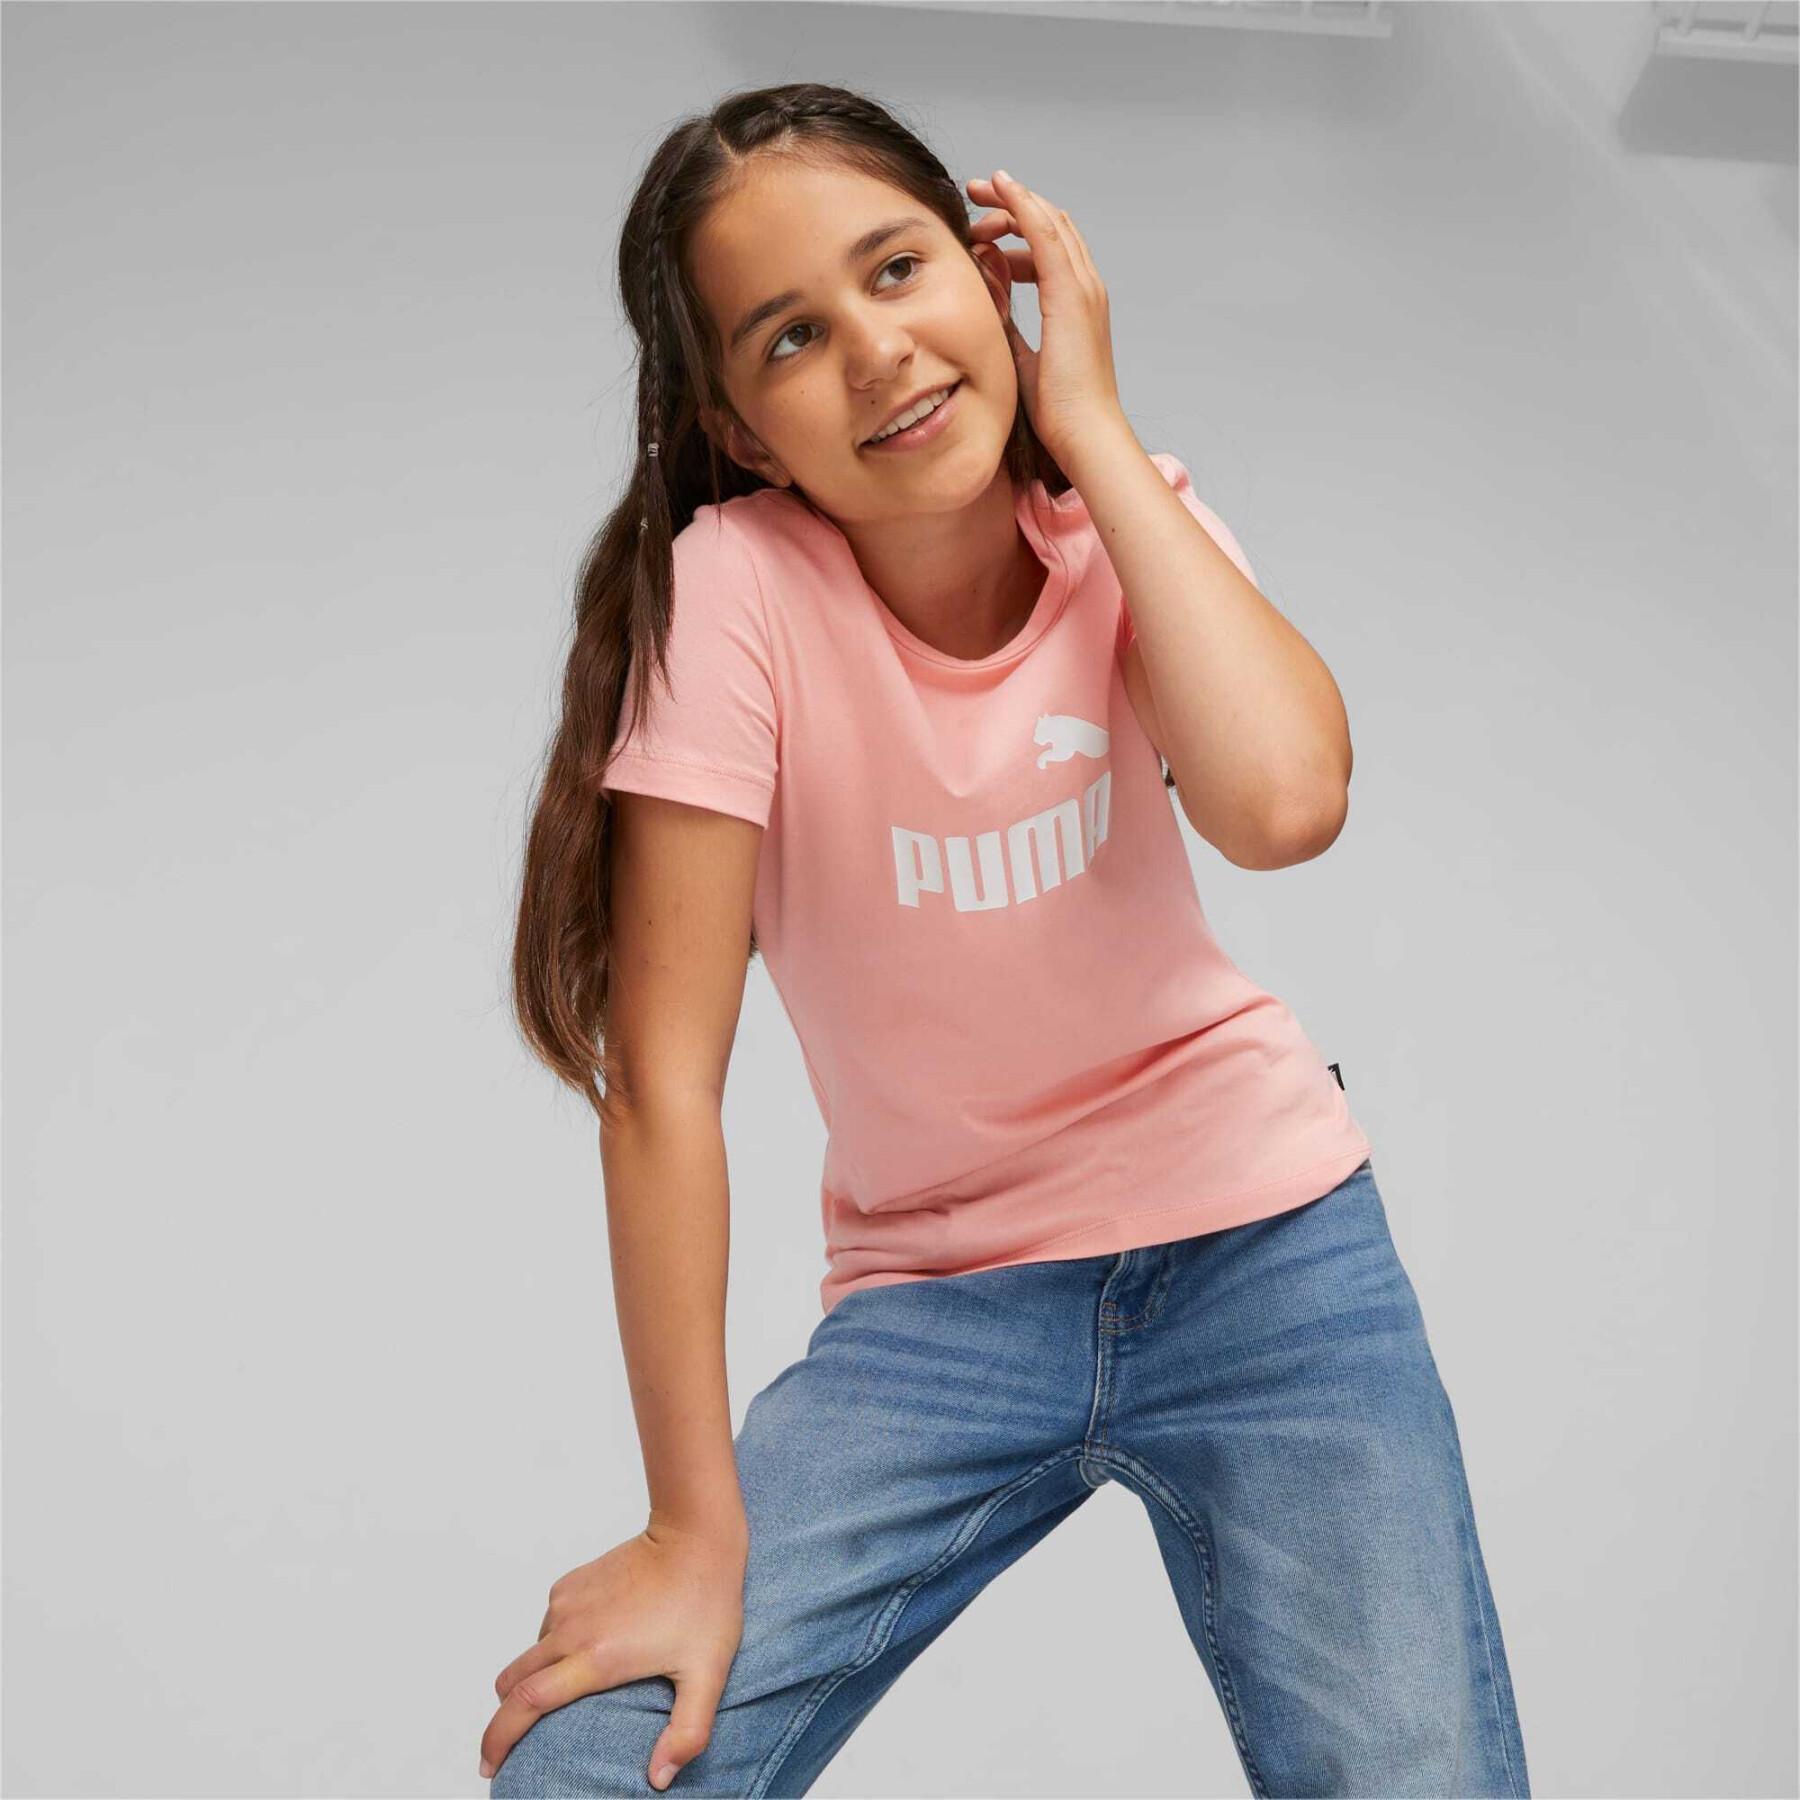 T-shirt de rapariga Puma Ess Logo